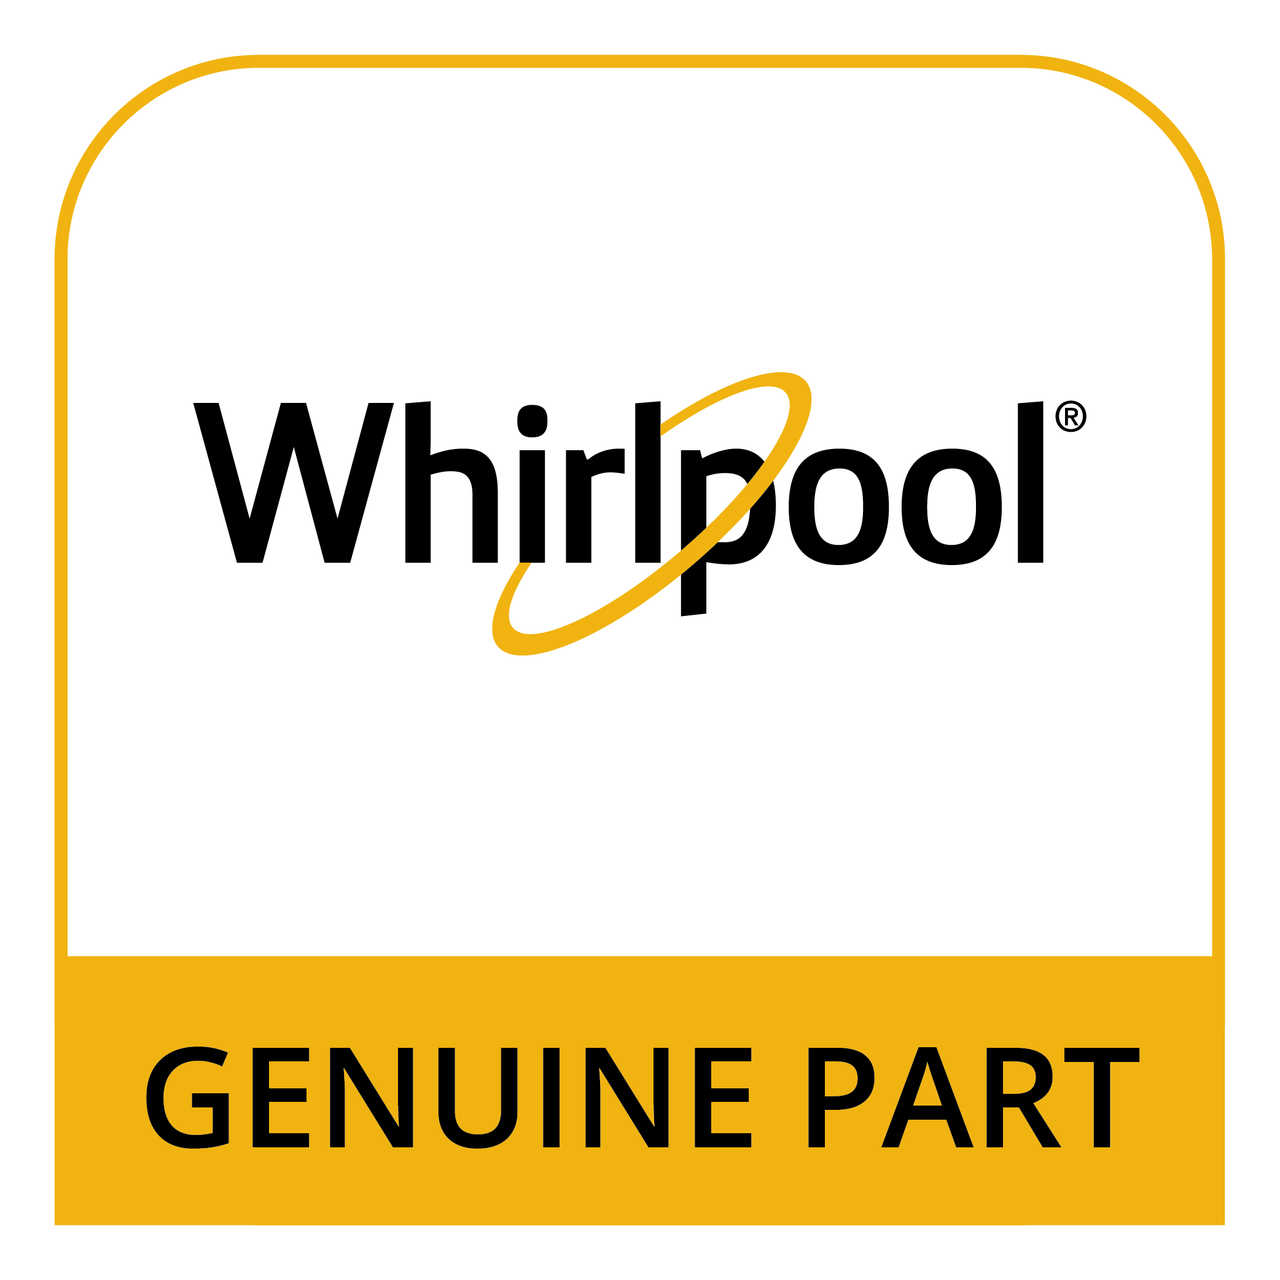 Whirlpool 3-82596-002 - Handle - Genuine Part